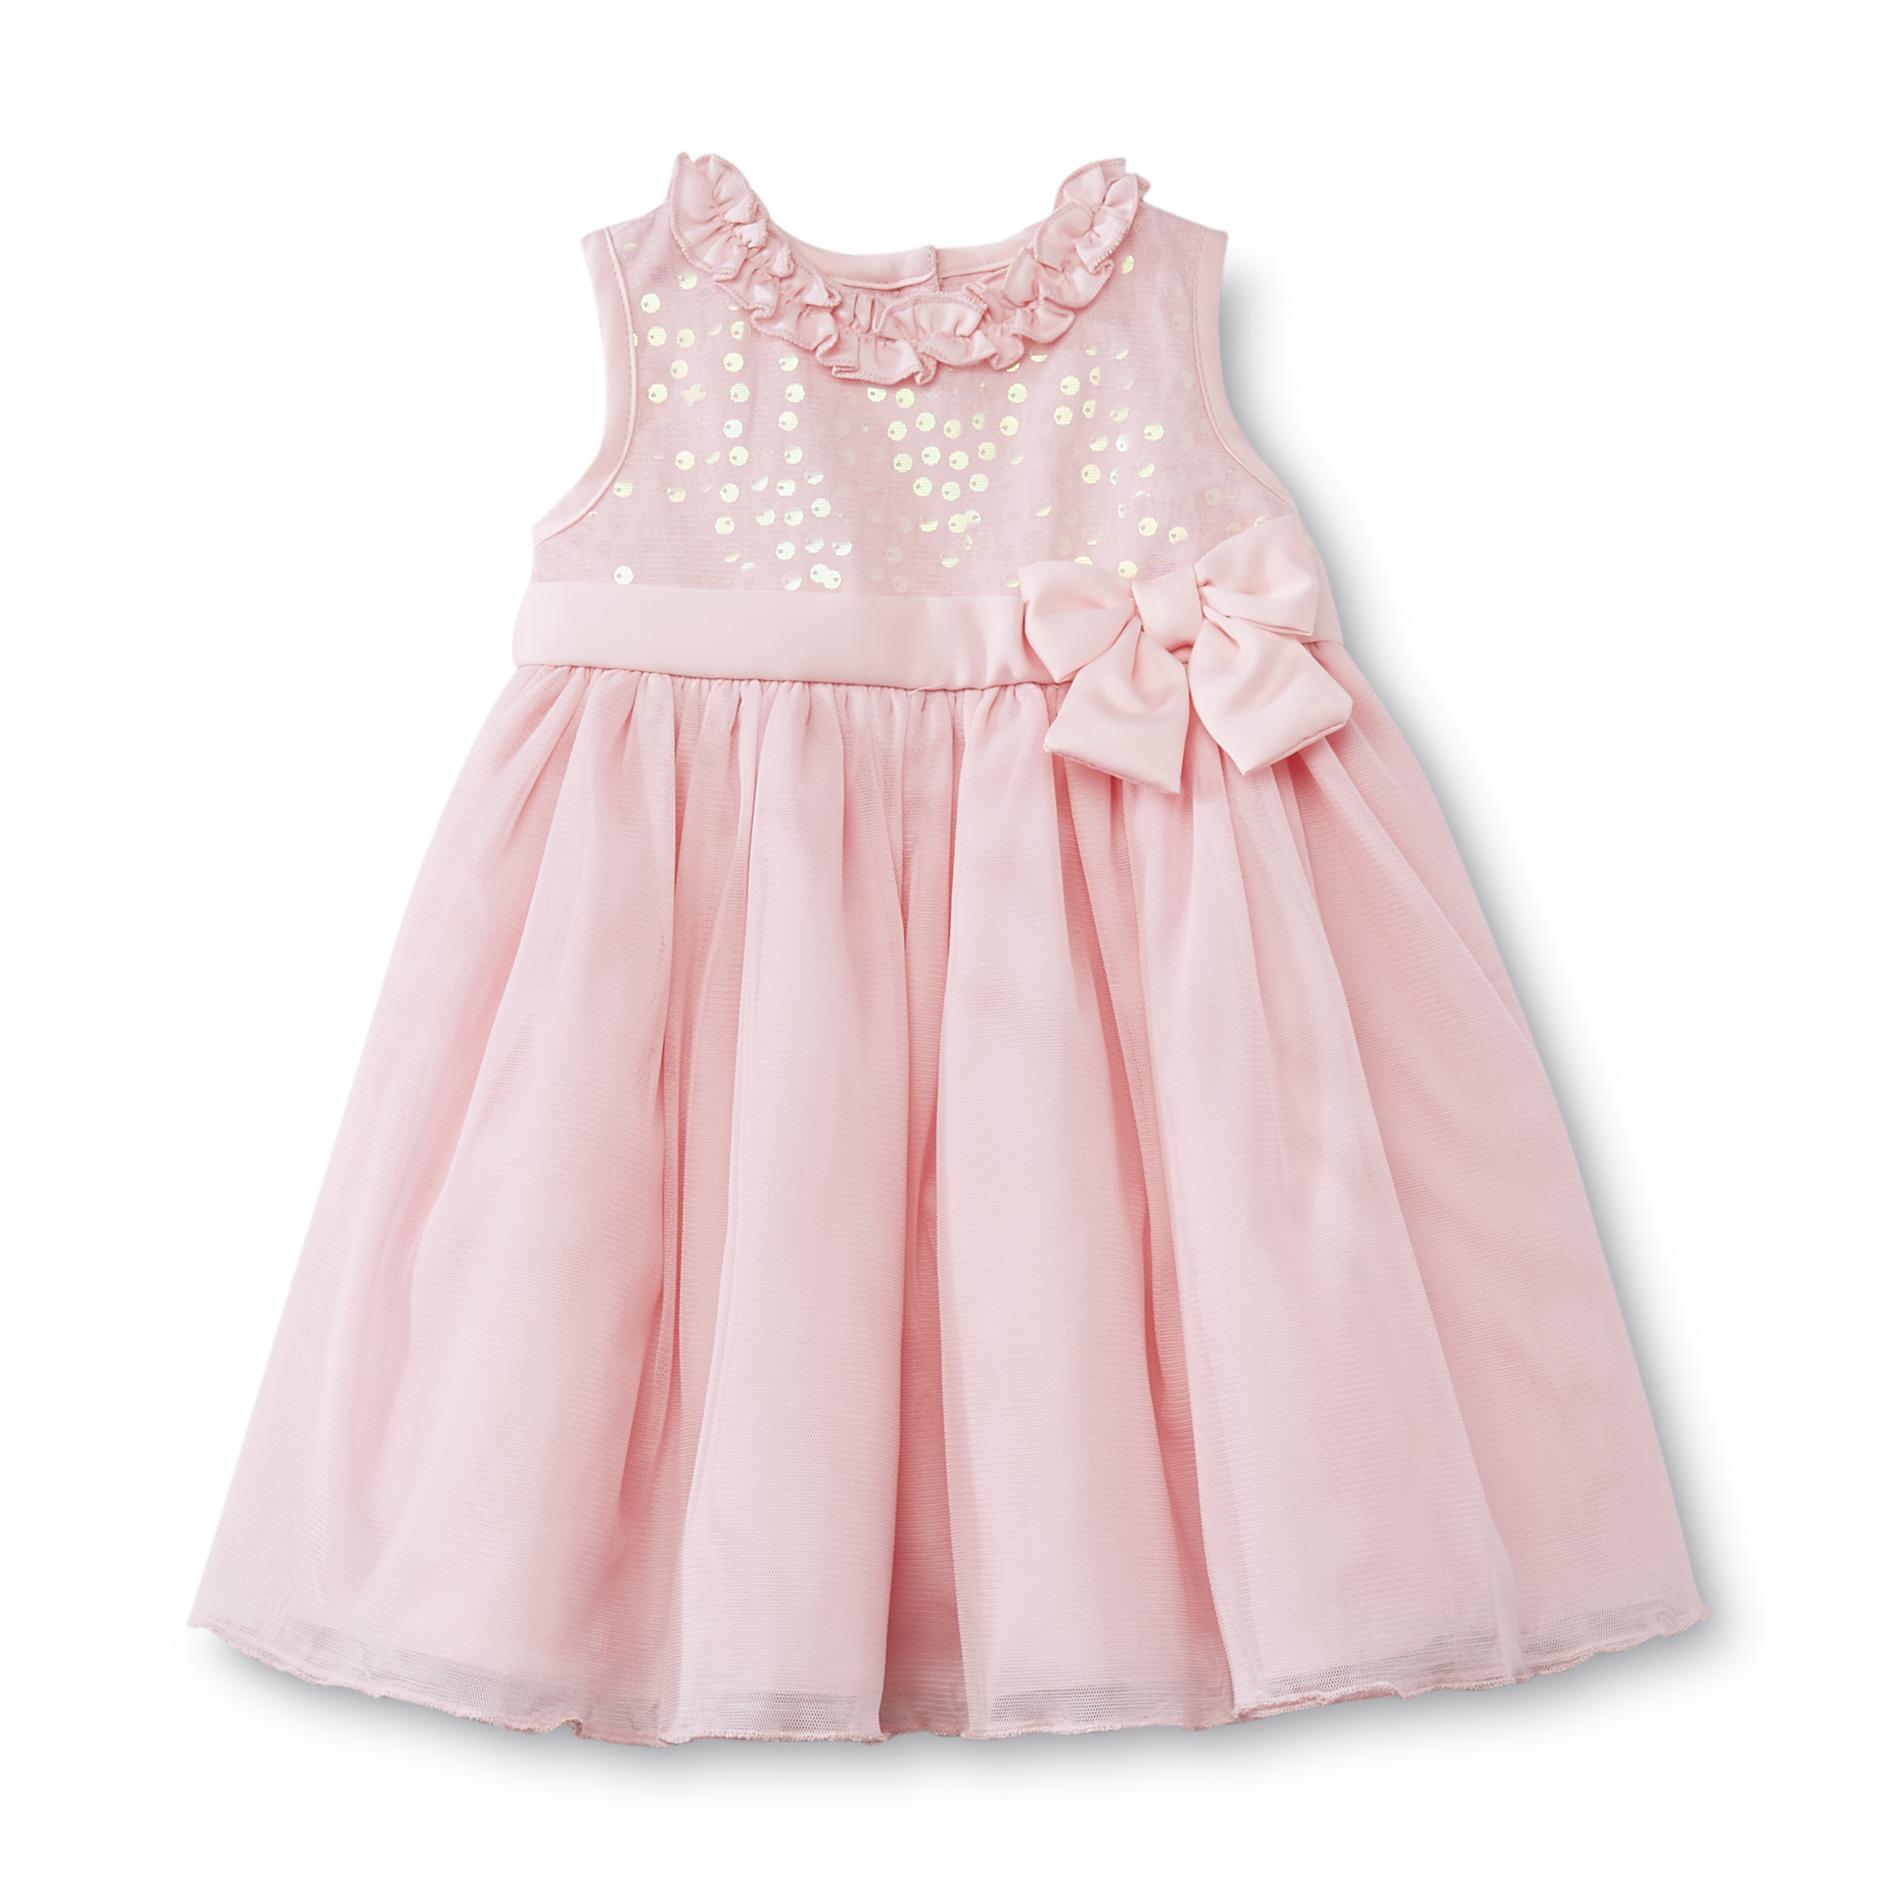 WonderKids Infant & Toddler Girl's Layered Dress